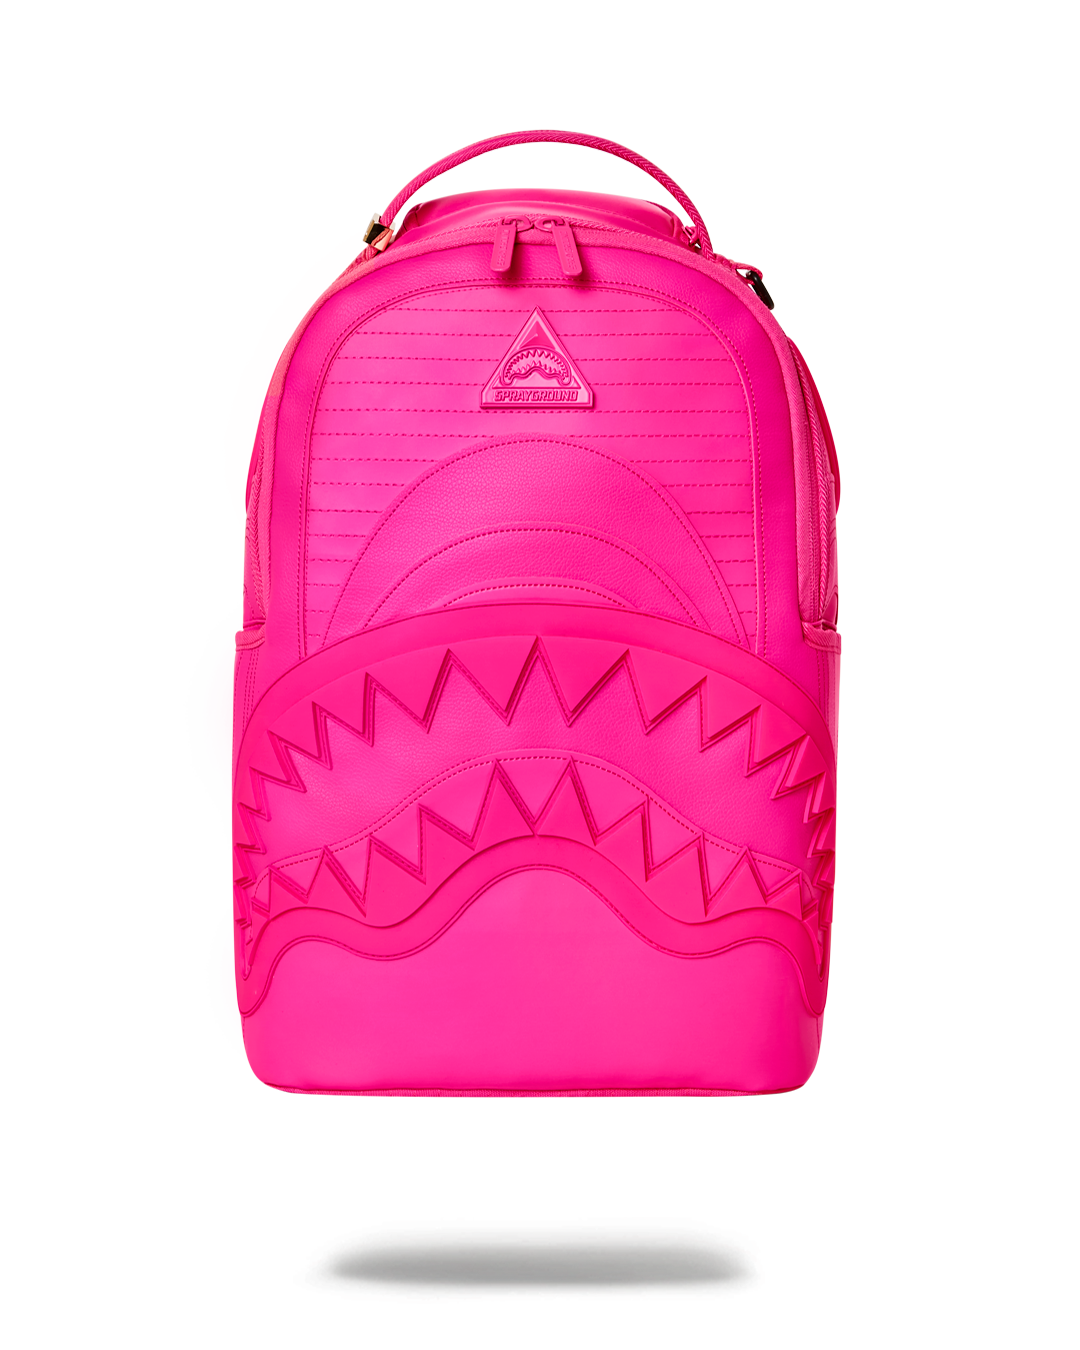 Sprayground Cherry Blossom Rubber Shark Backpack - Blue